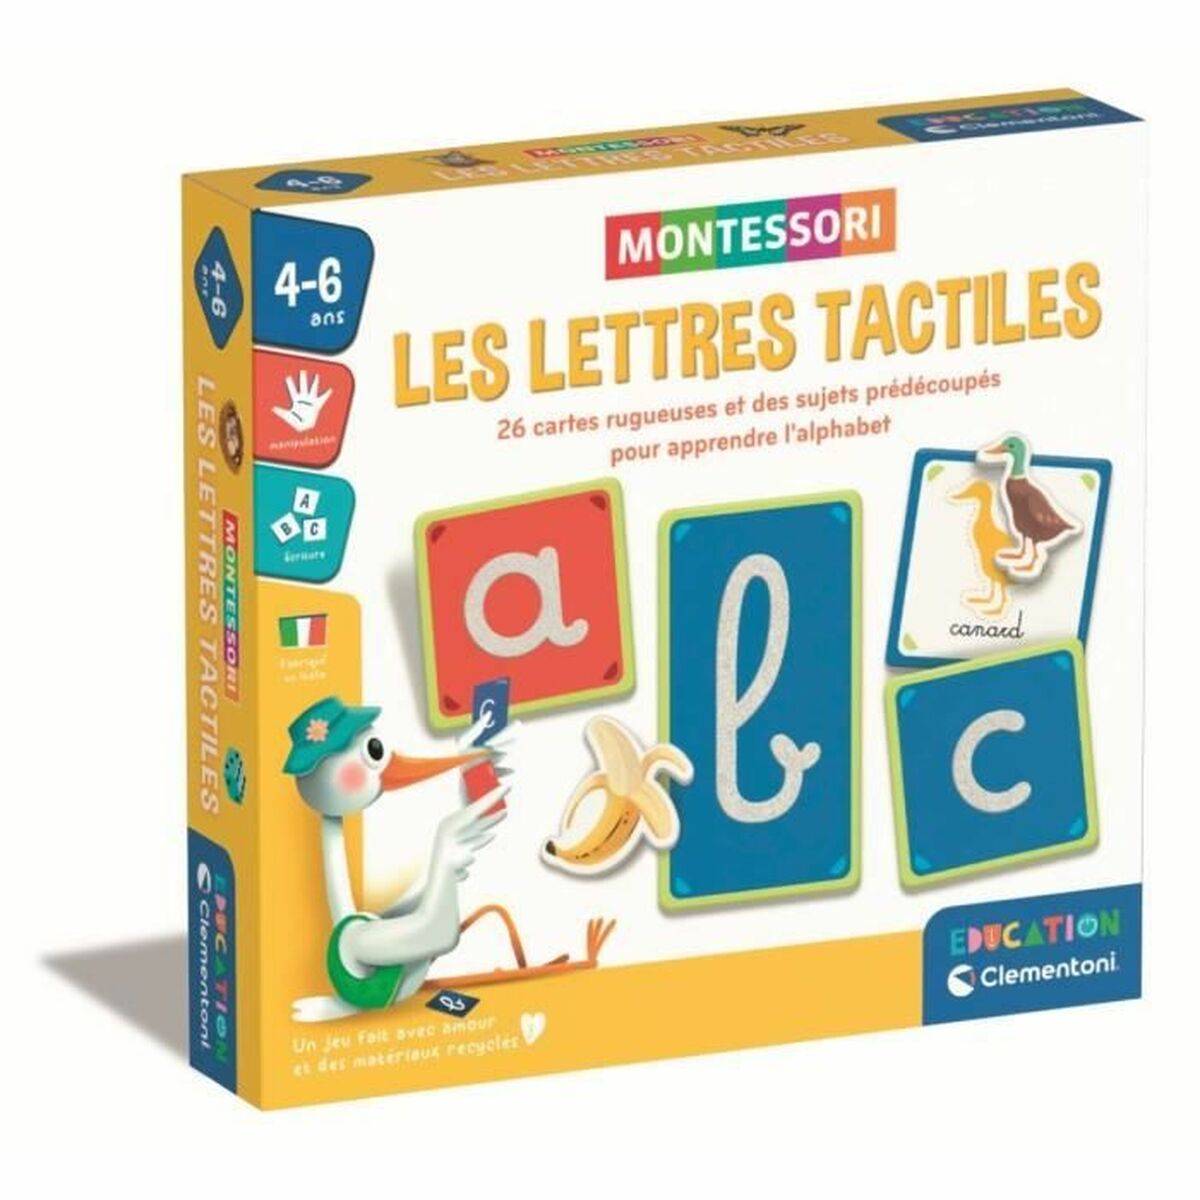 Jouet Educatif Clementoni Les lettres tactiles (FR)